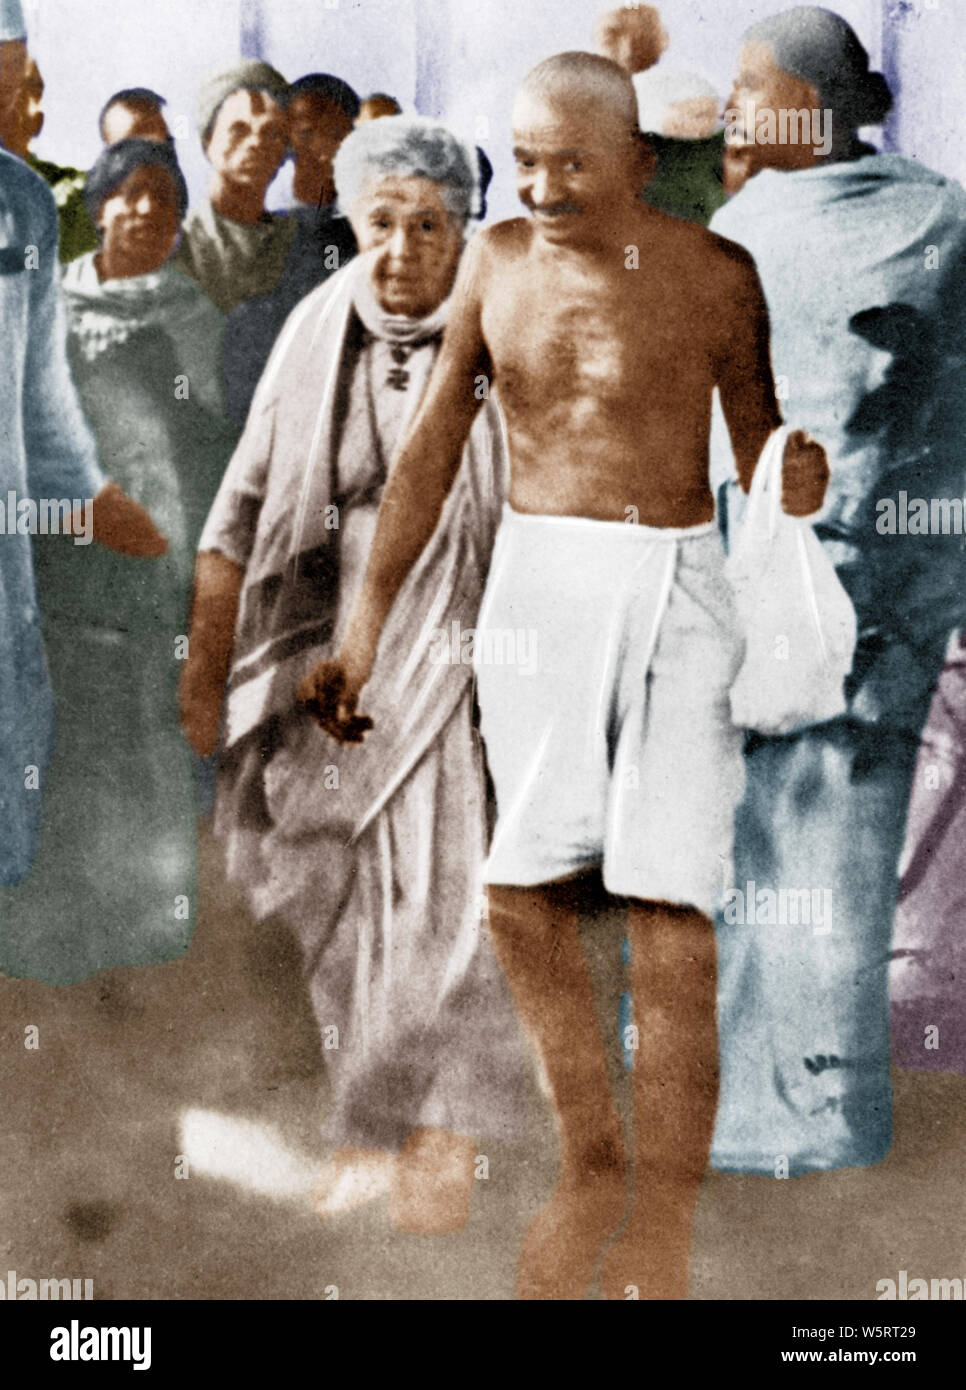 Mahatma Gandhi avec Annie Besant Madras Tamil Nadu Inde Asie septembre 1921 ancienne image millésime 1900 Banque D'Images